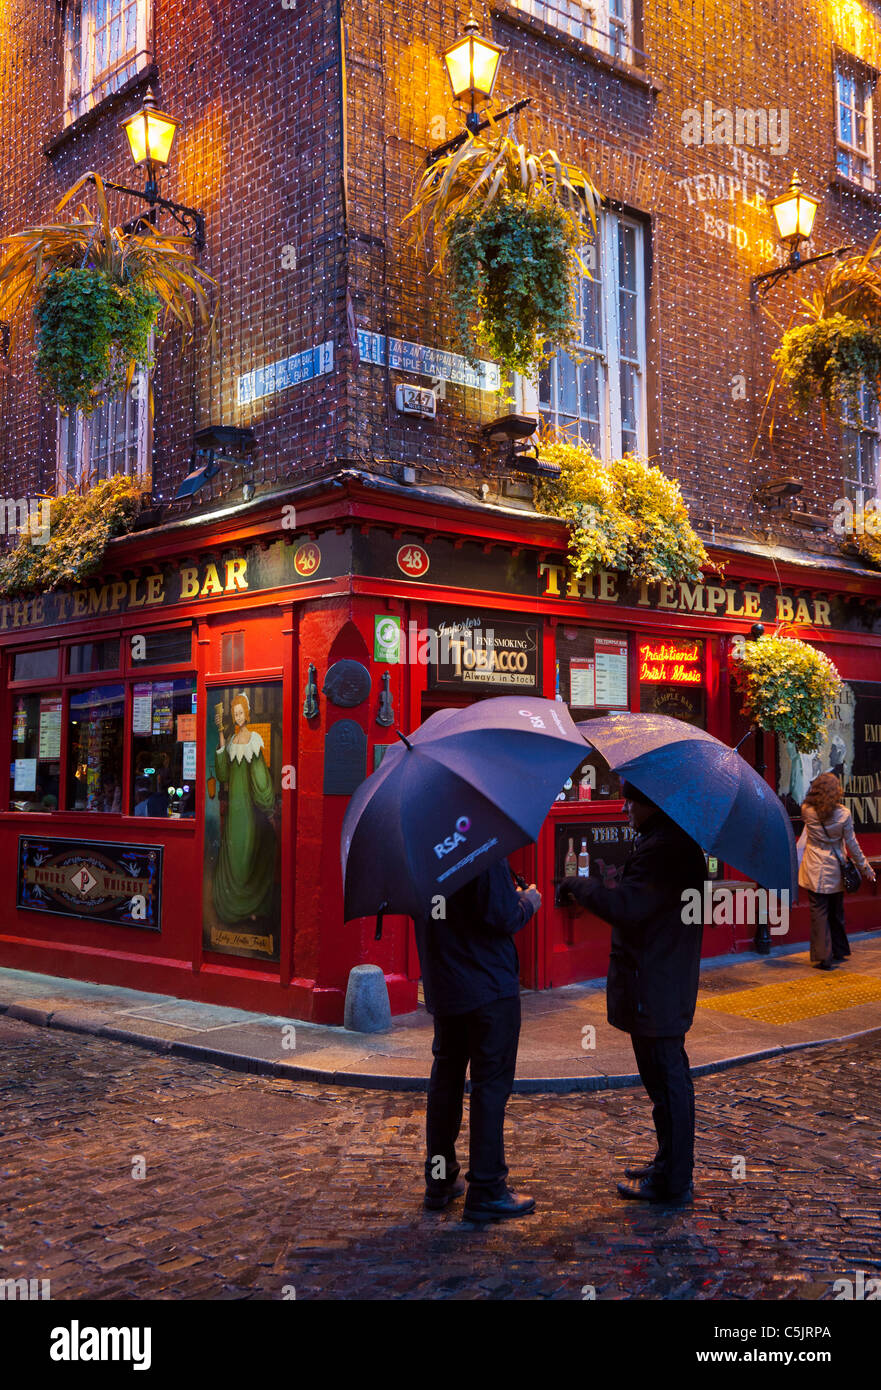 Pub de Temple Bar à Dublin, Irlande Banque D'Images